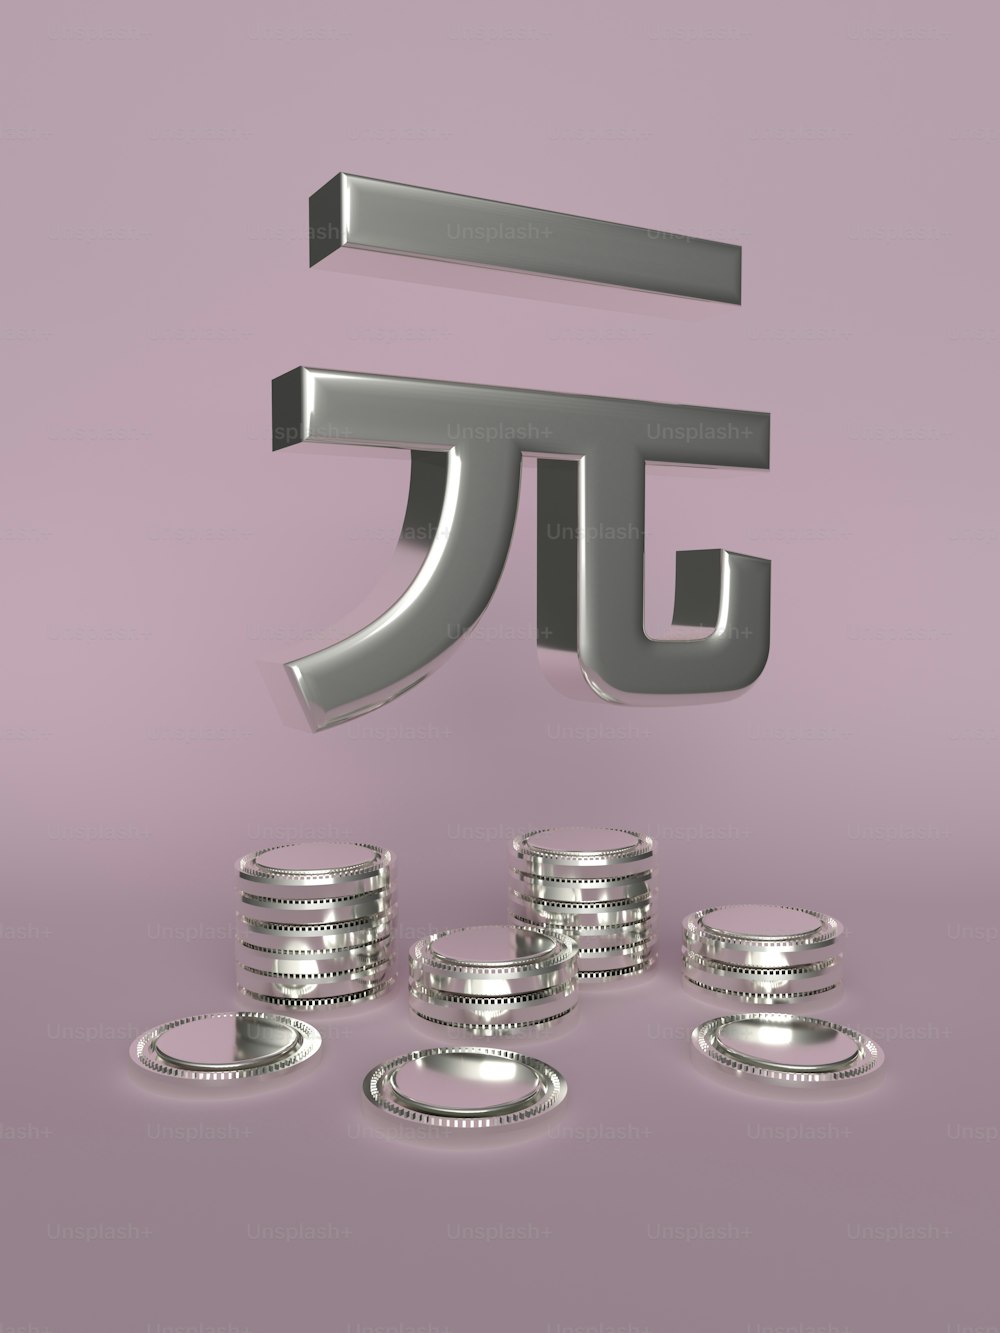 Una pila de monedas de plata sentadas junto a un símbolo pi